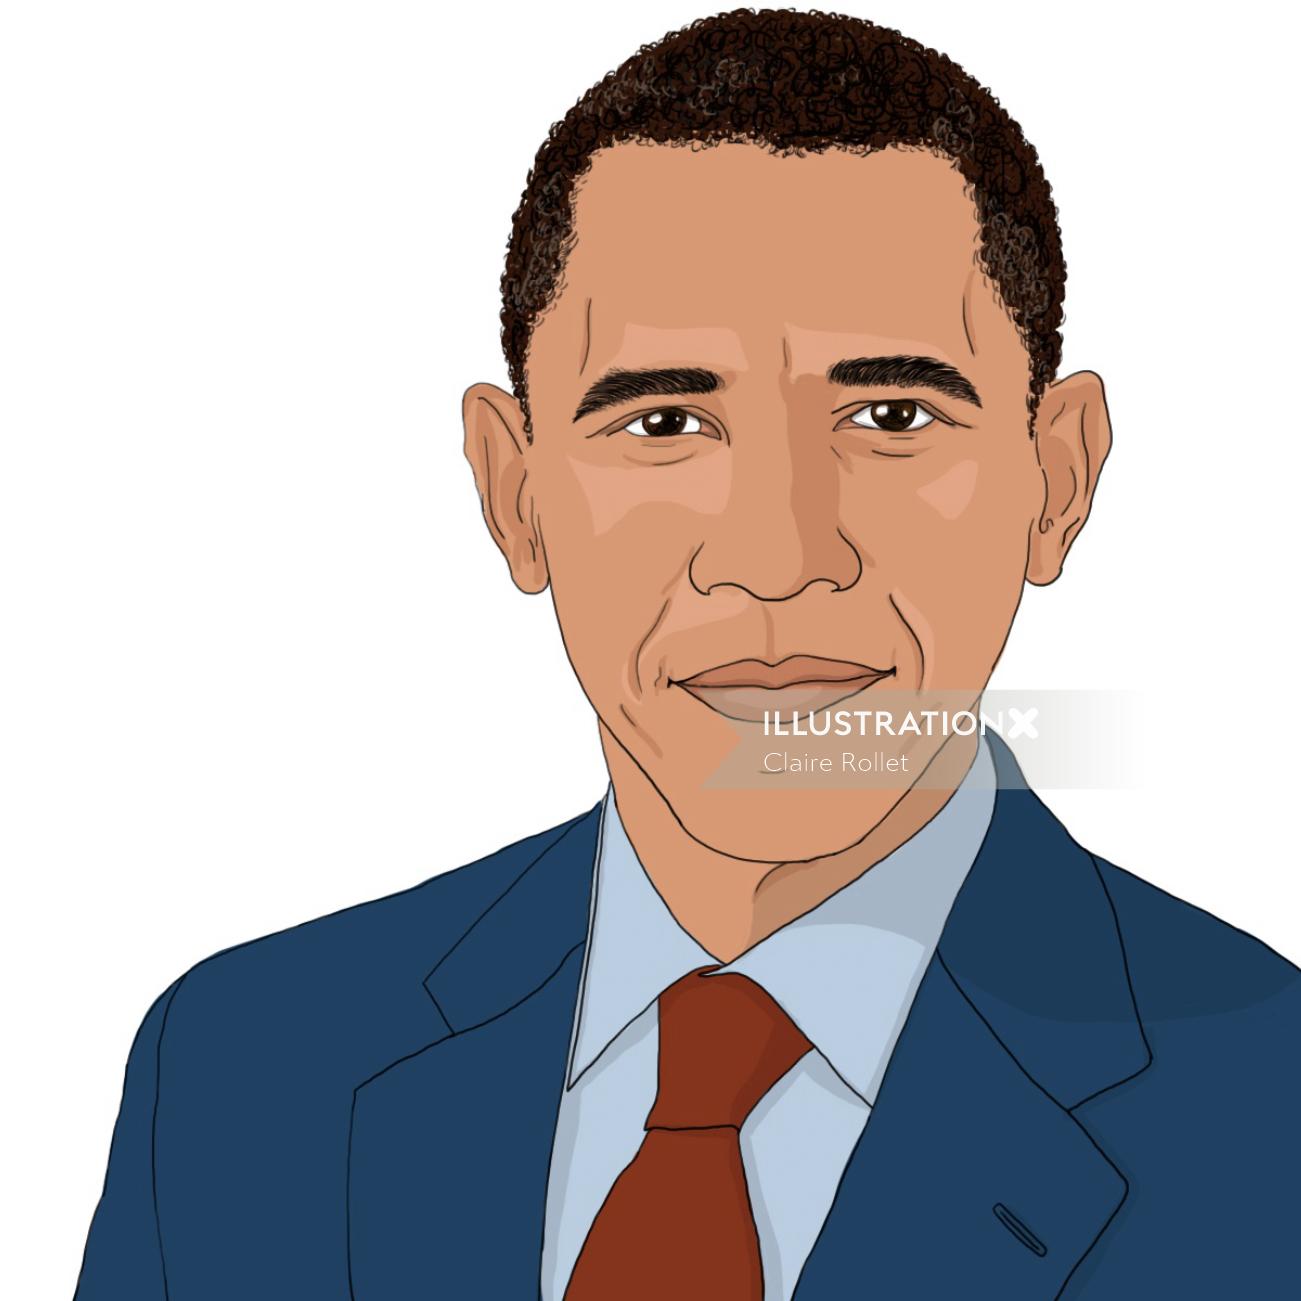 Retrato de Barack Obama en 2009 ilustrado por Claire Rollet